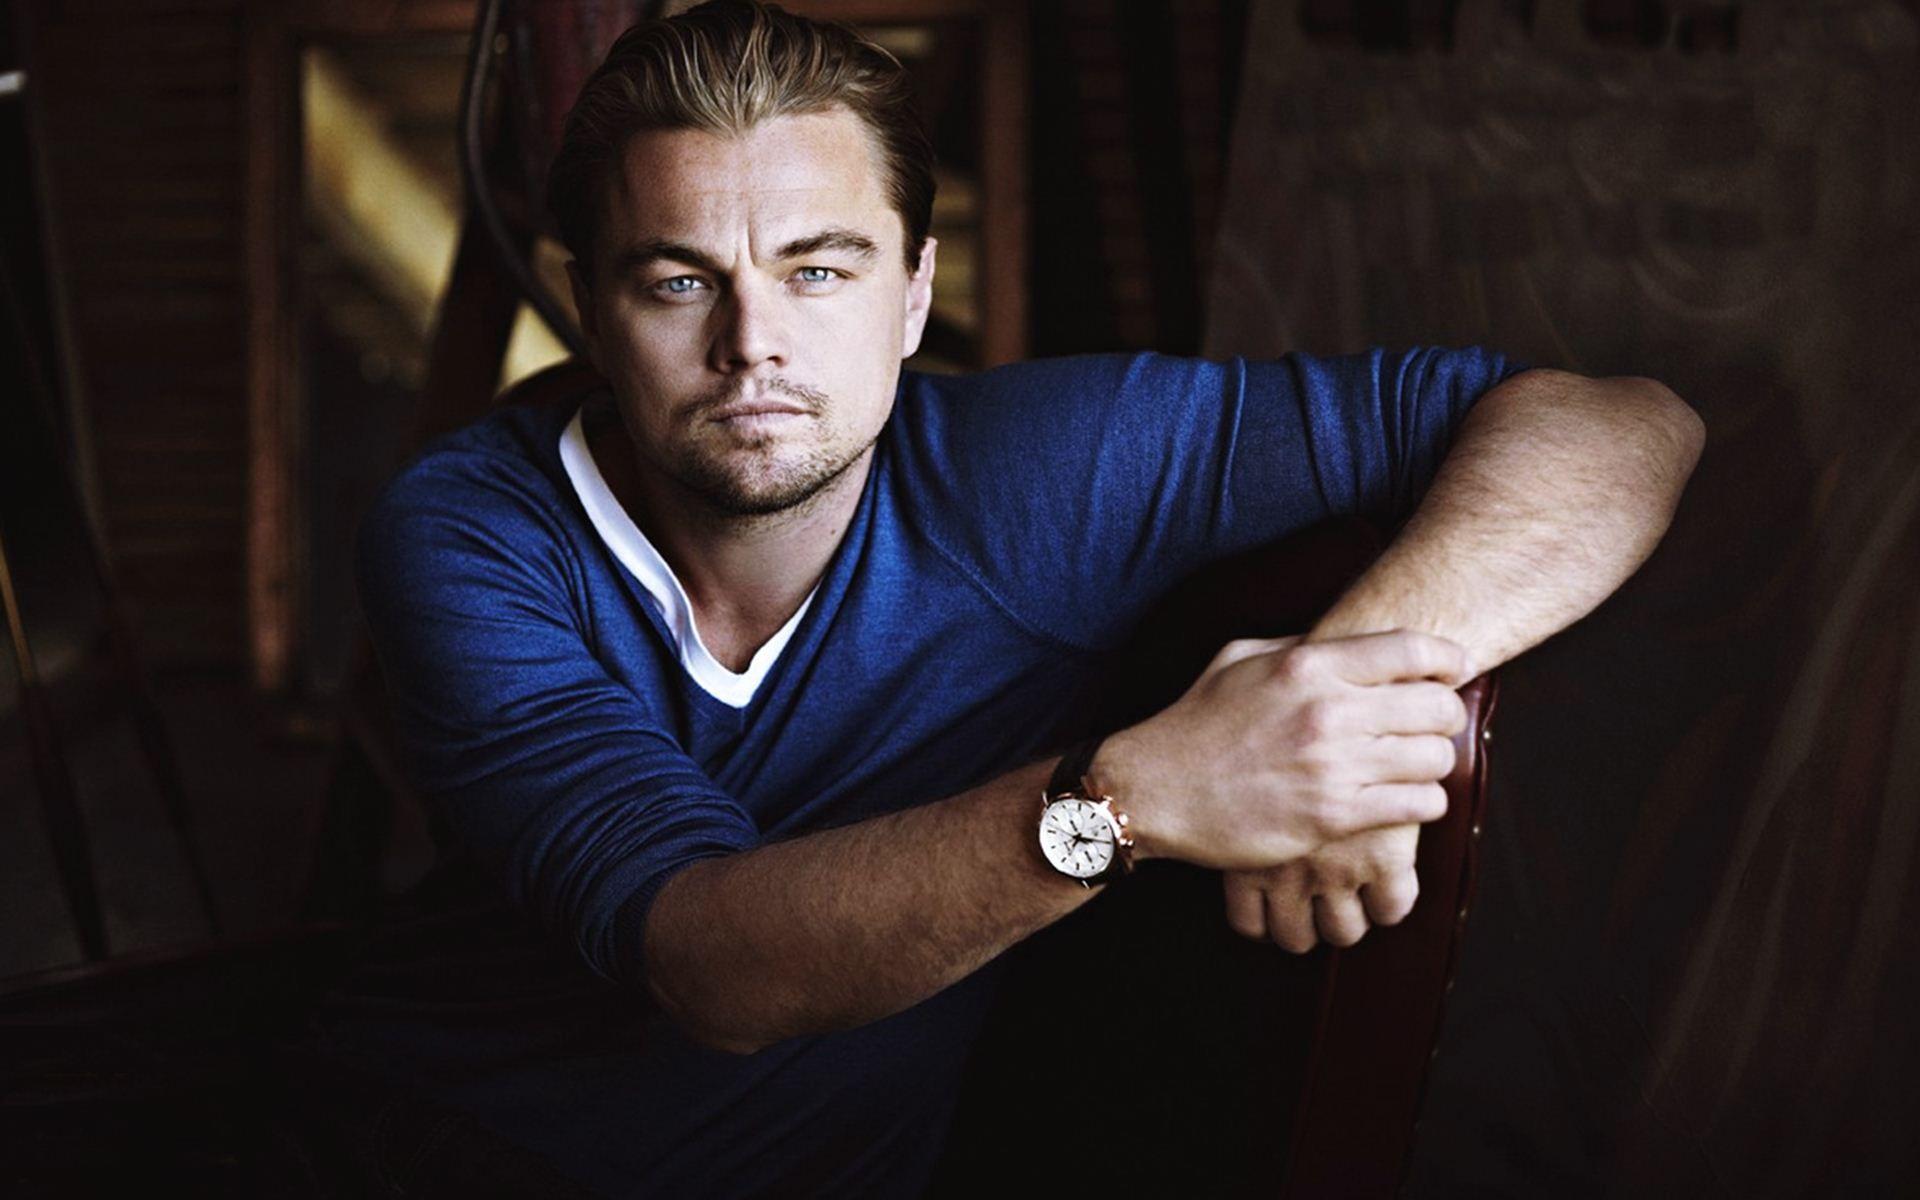 Leonardo DiCaprio Wallpaper High Resolution and Quality Download